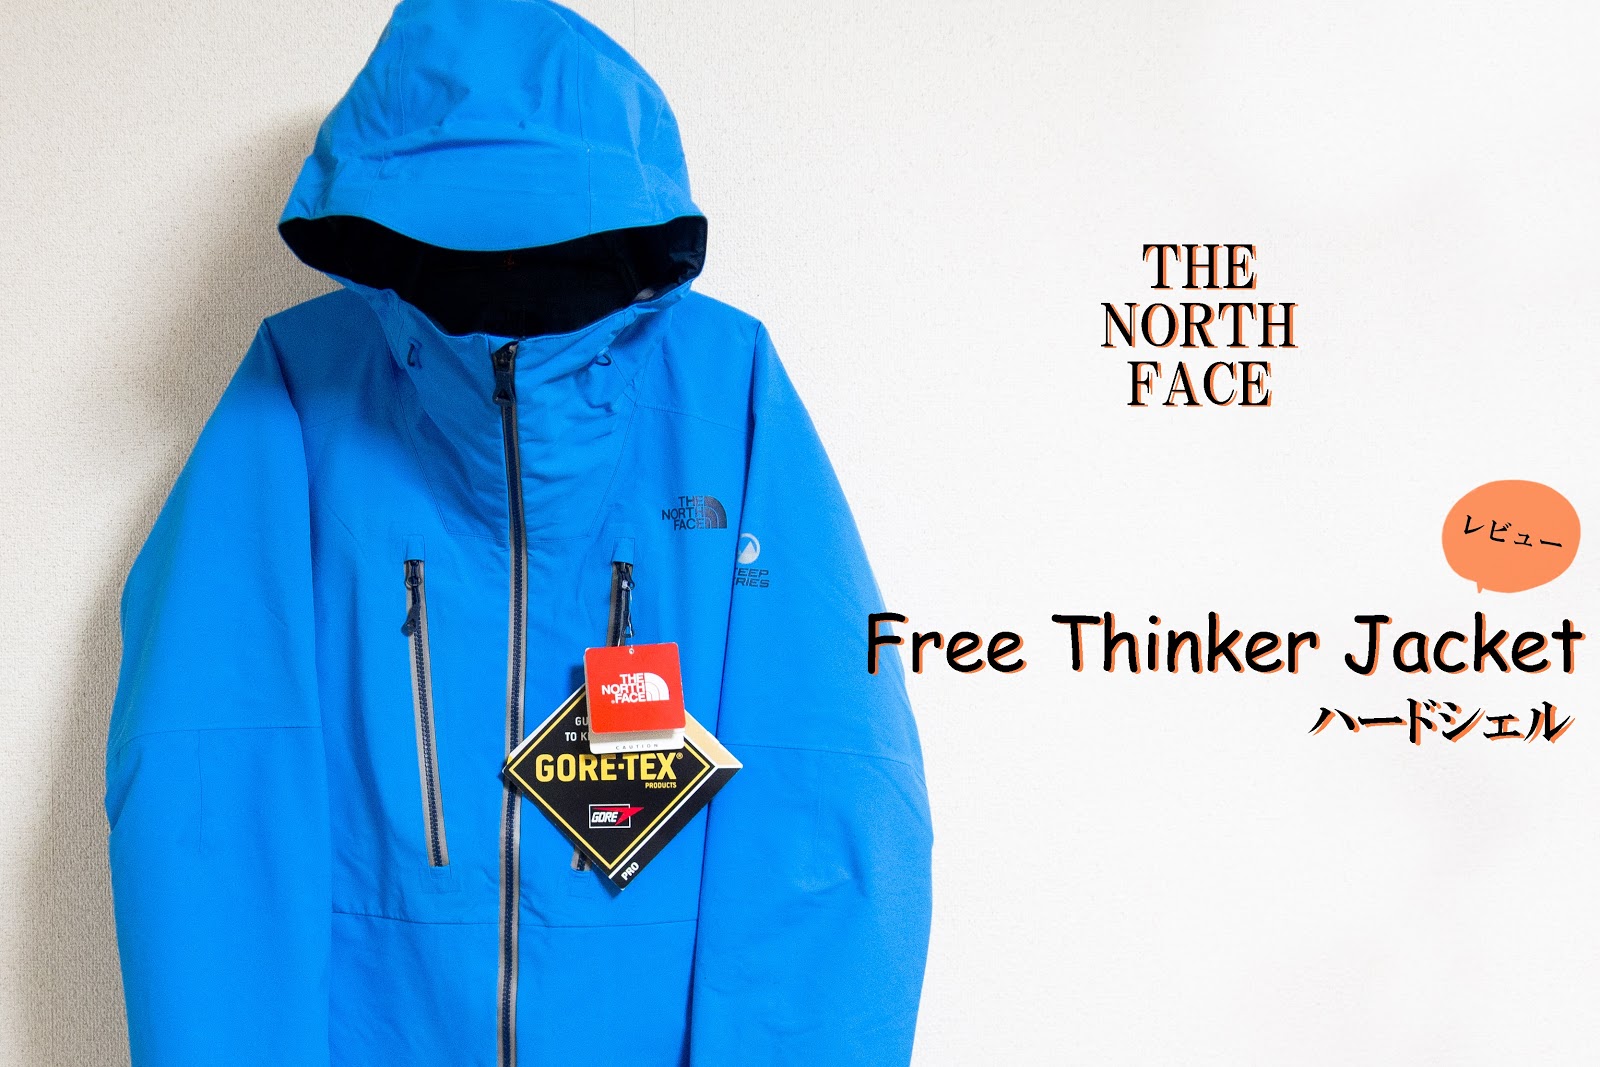 1/f ゆらぎ: ノースフェイス「Free Thinker Jacket」THE NORTH FACE ハードシェル フリーシンカージャケット レビュー